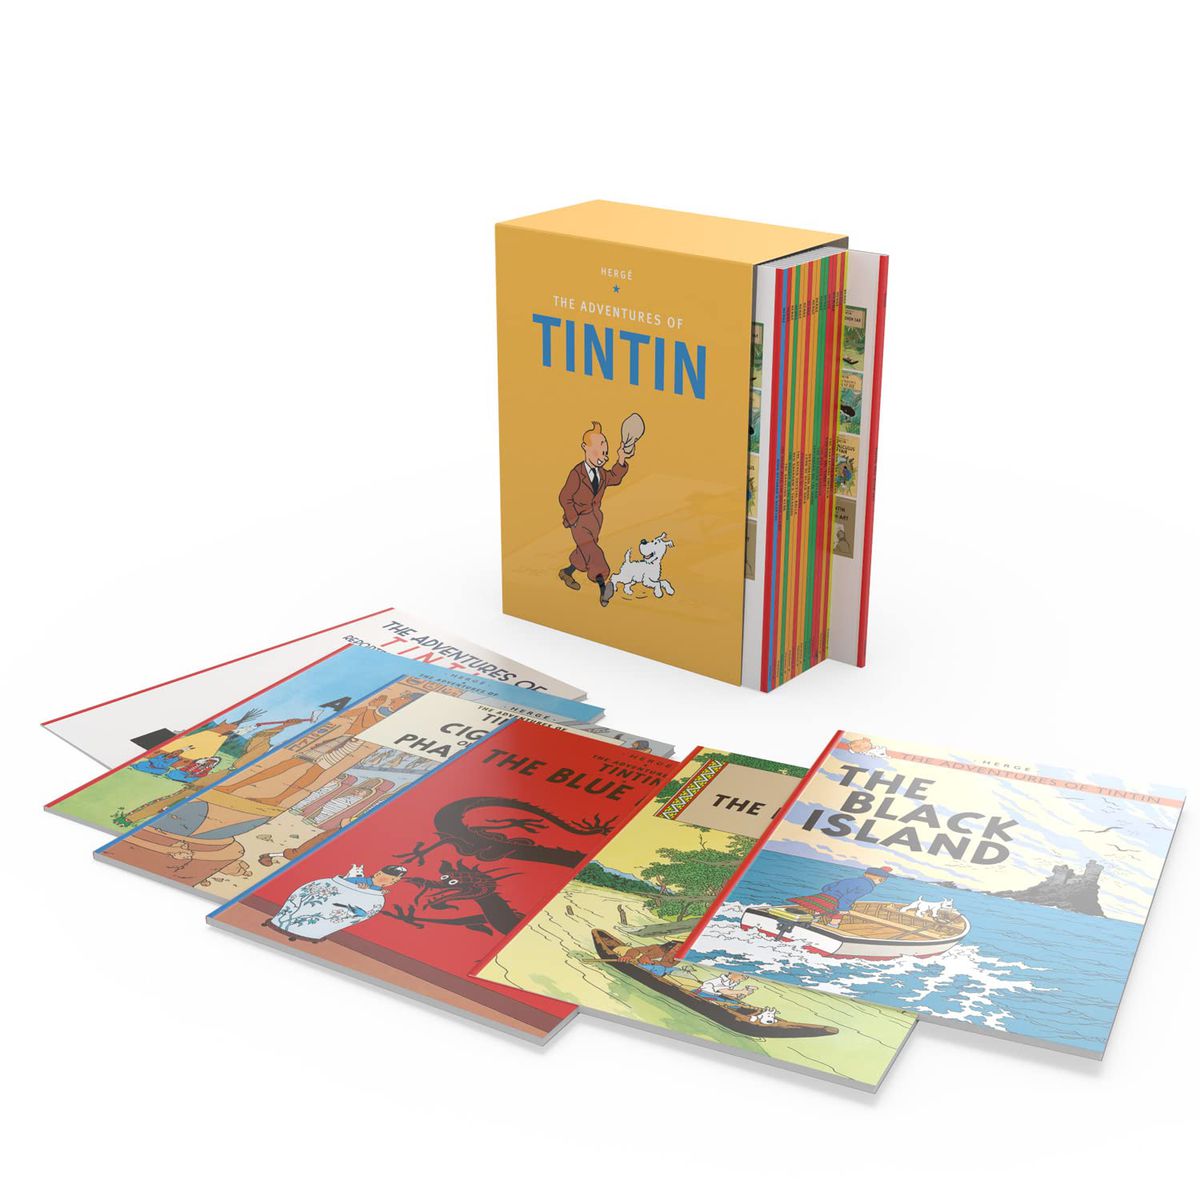 Un coffret Tintin avec plusieurs livres comme L'Ile noire et Le Lotus bleu assis face visible